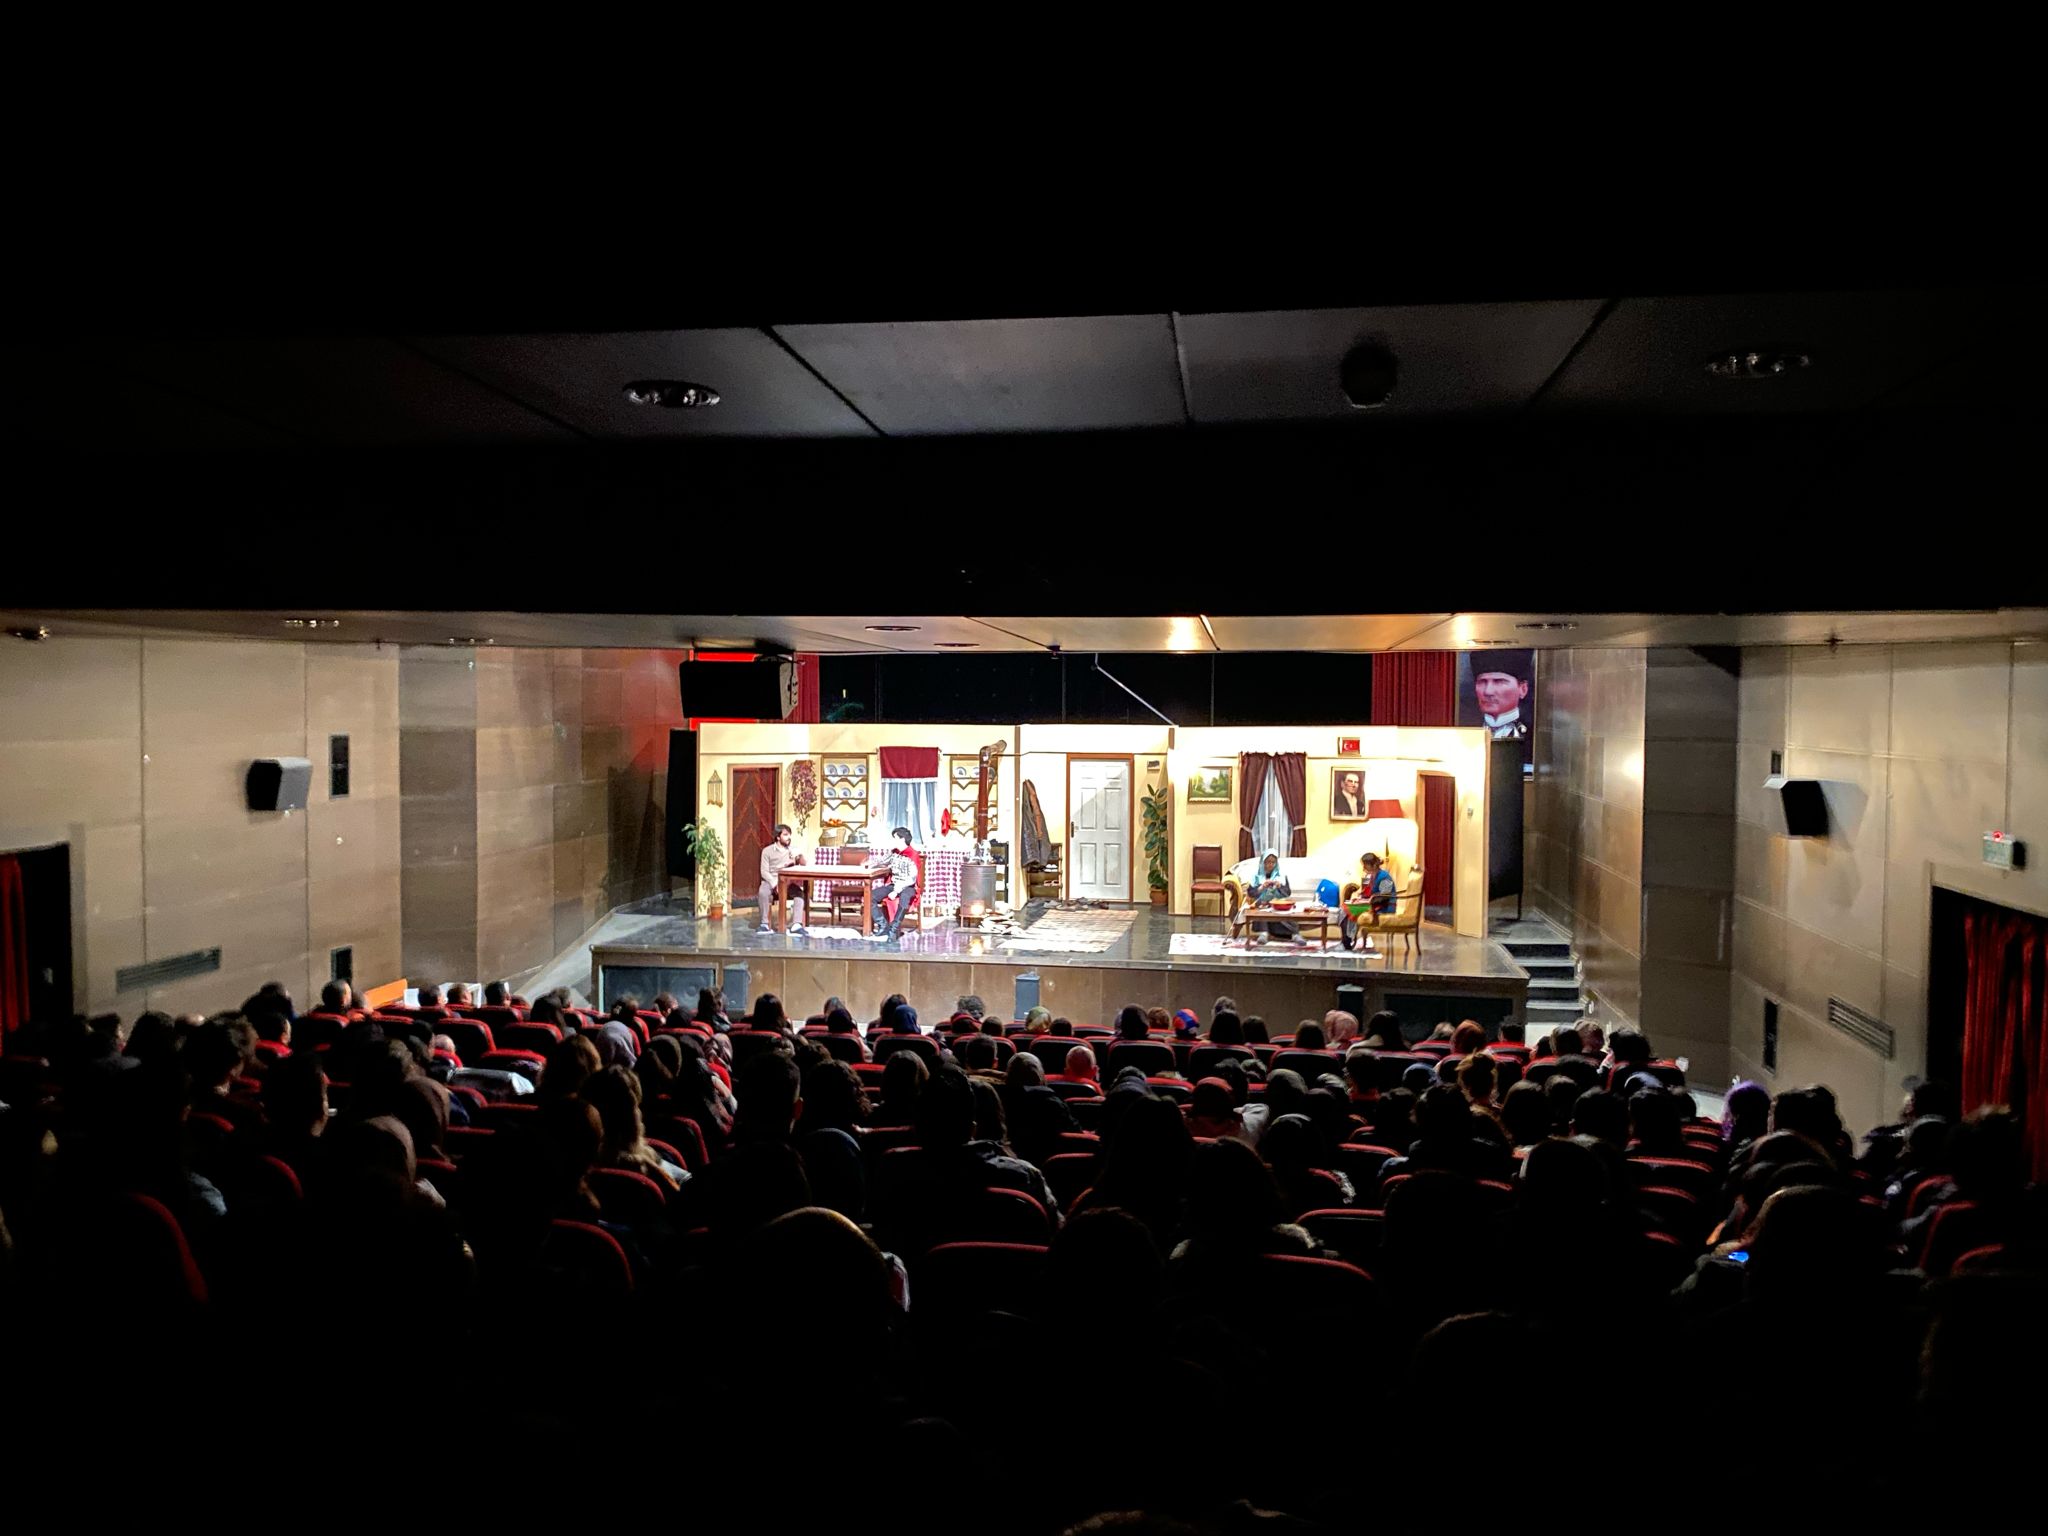 Kars Belediyesi Tiyatro Topluluğu  "Ocak" Perde 4  sahnelendi